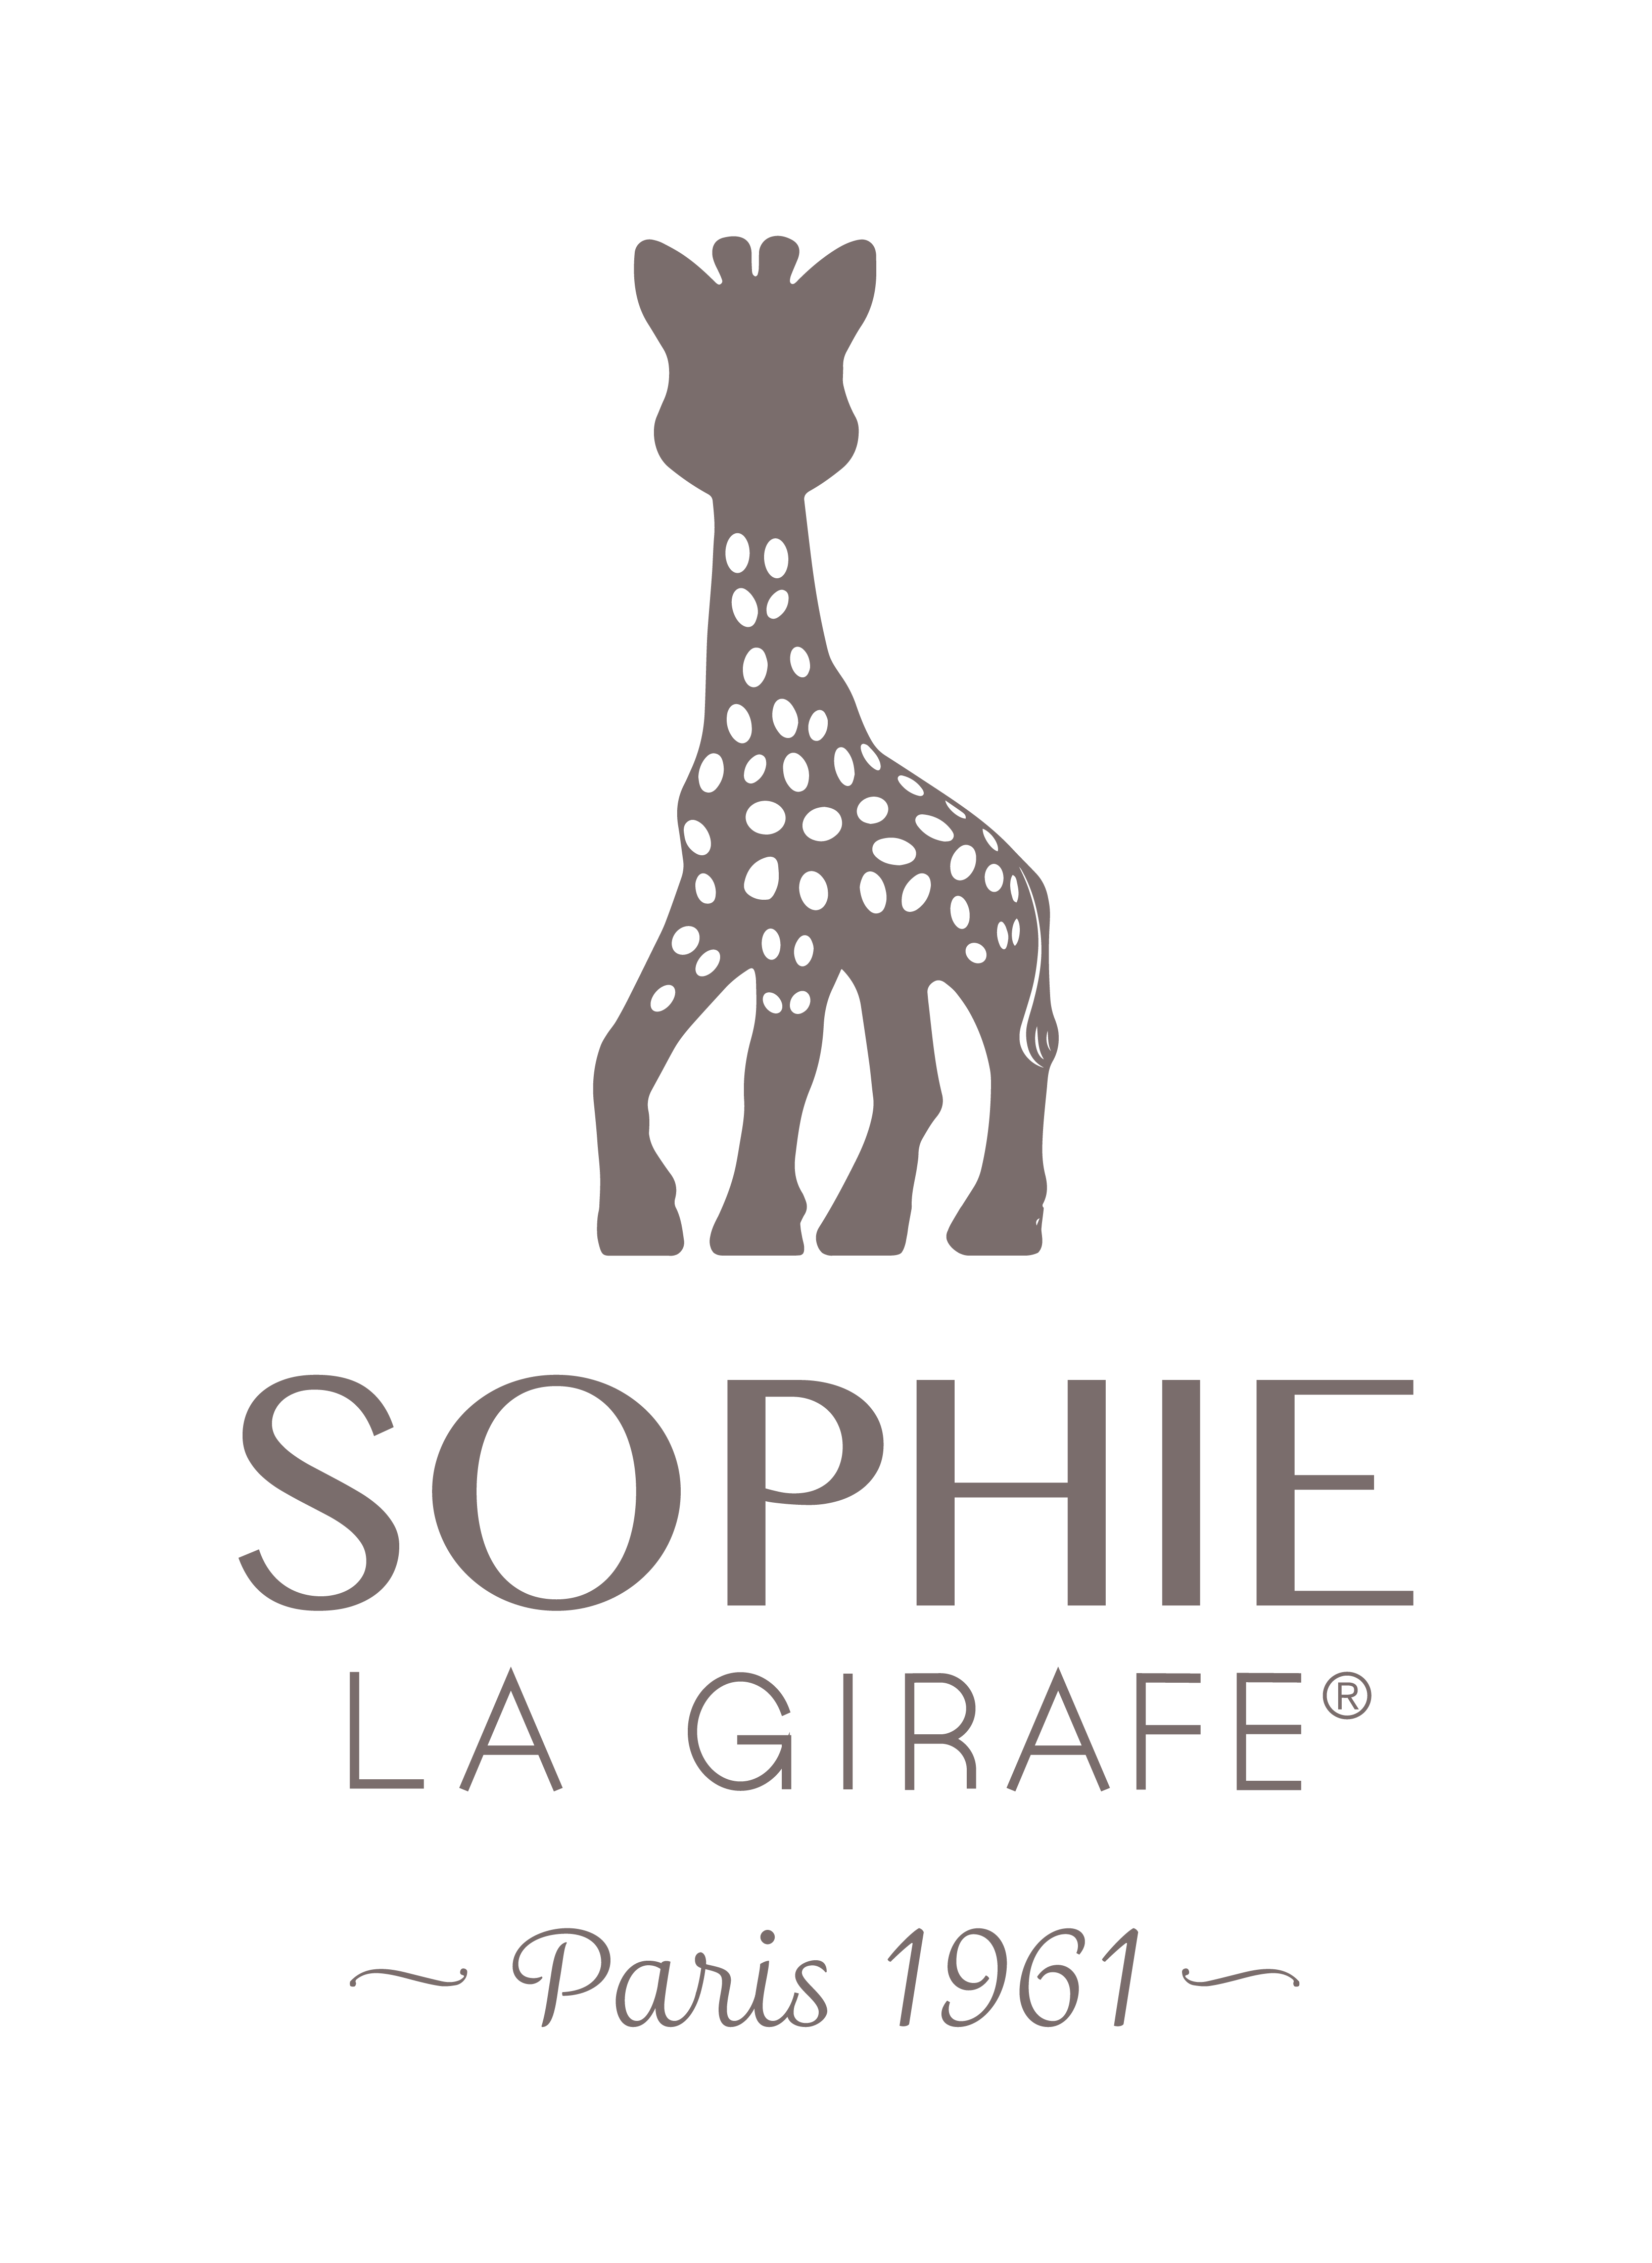 Sophie la girafe